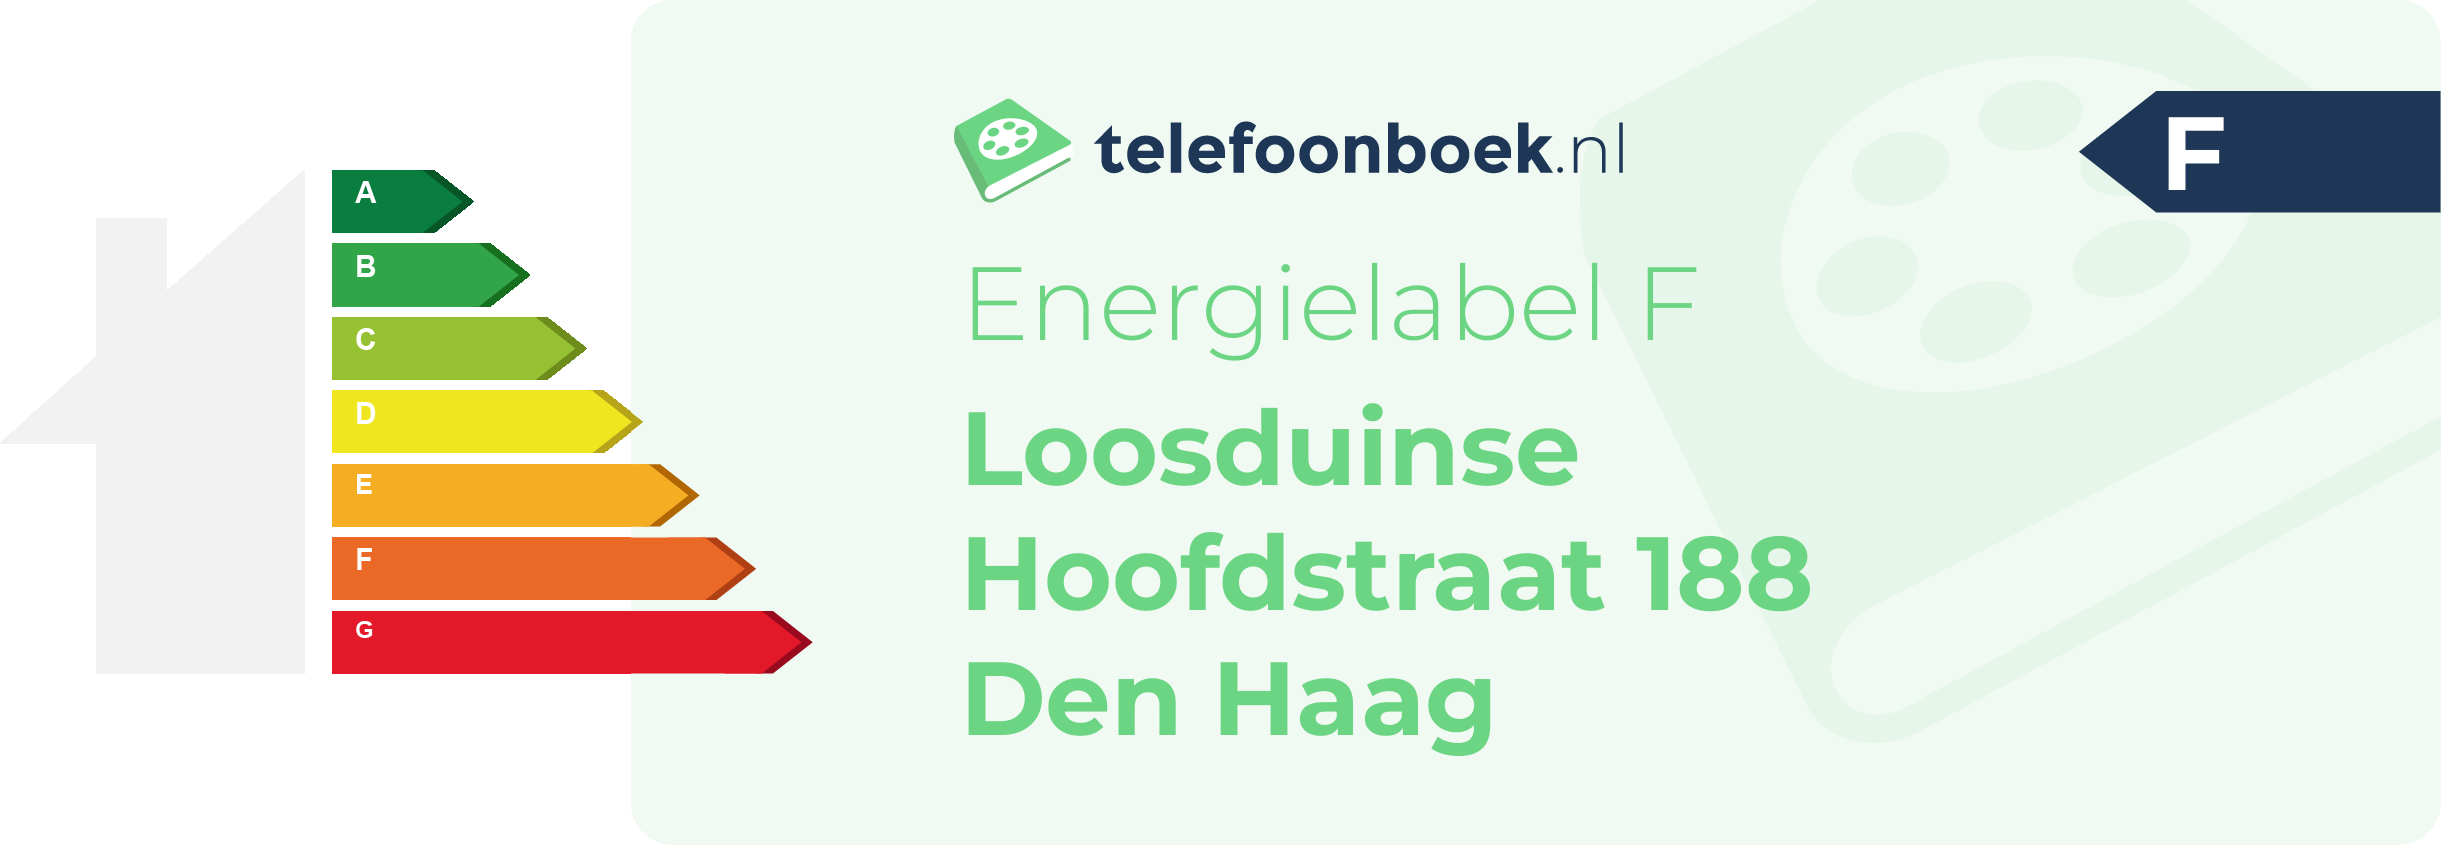 Energielabel Loosduinse Hoofdstraat 188 Den Haag